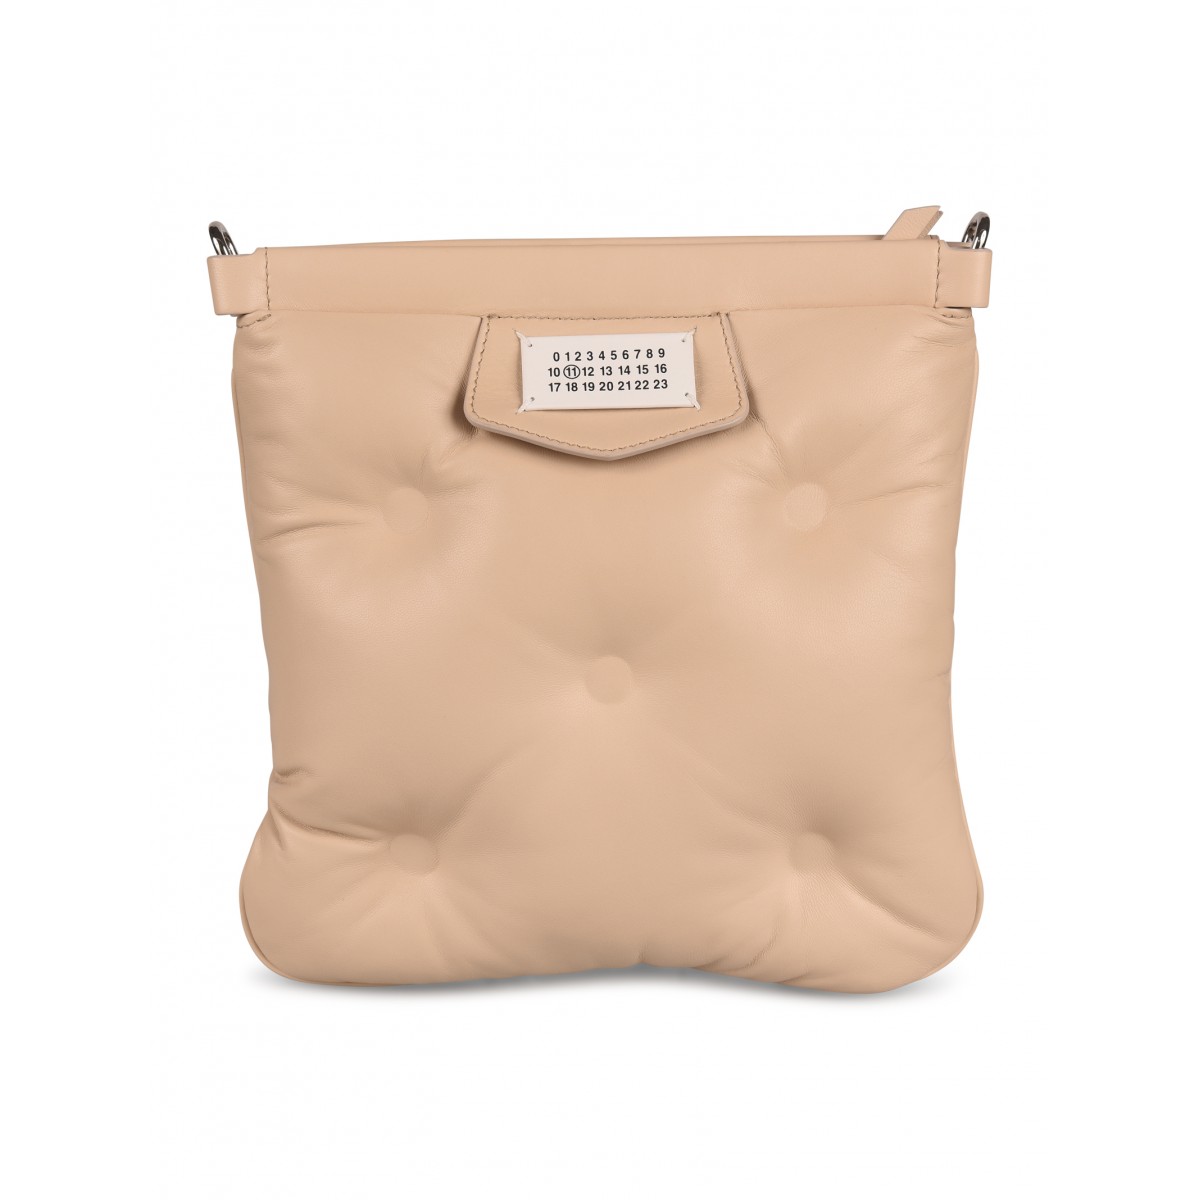 Maison Margiela Glam Slam Flat Pocket Bag